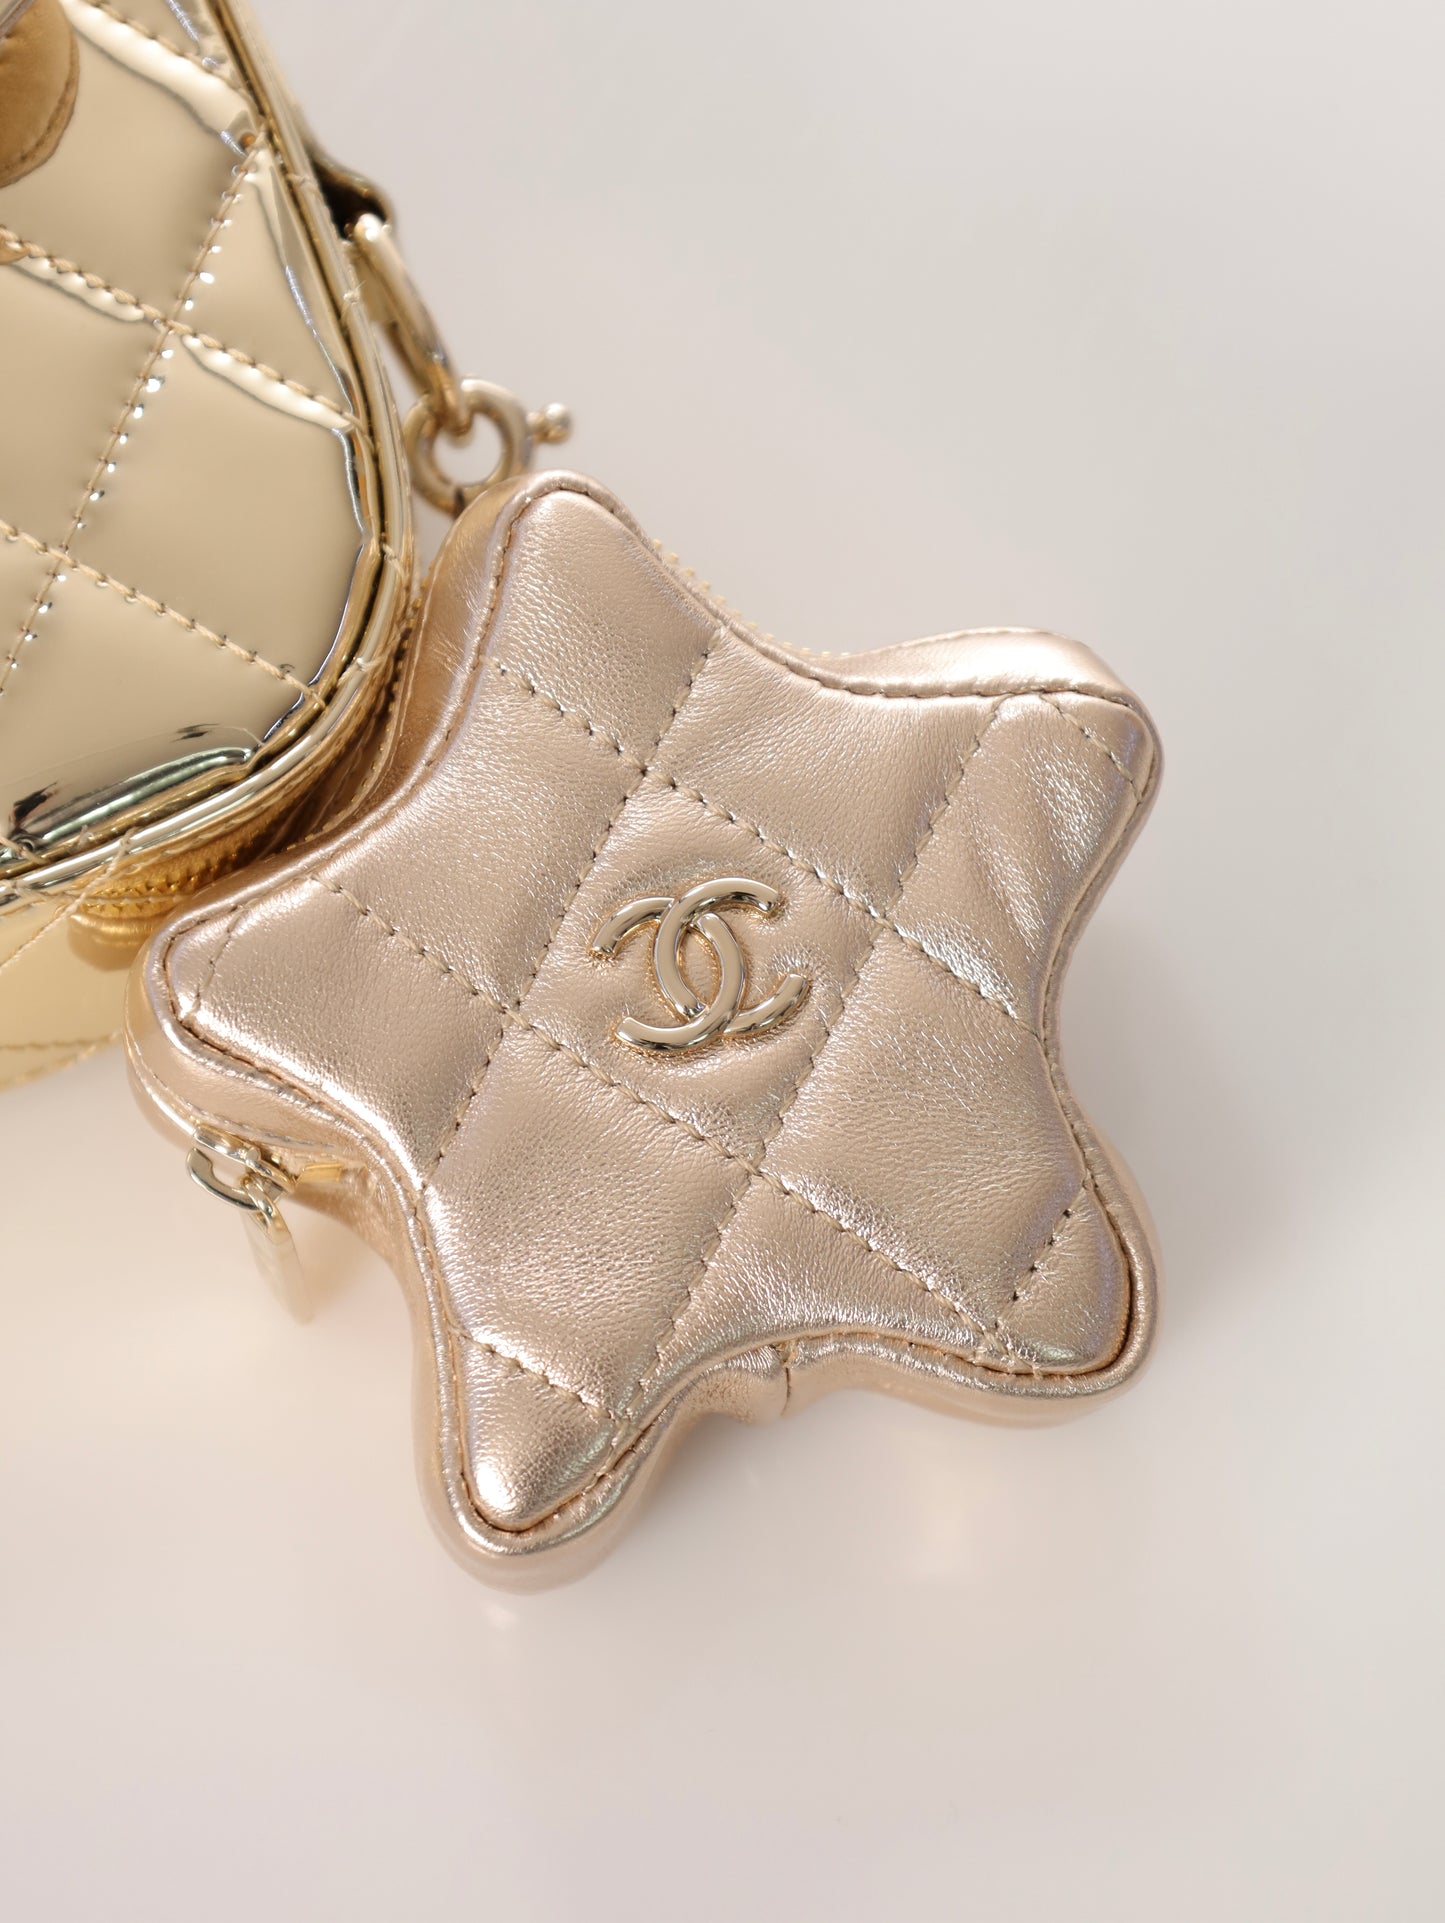 CHANEL Timeless Mini Gold mit Stern Anhänger Klassische Tasche